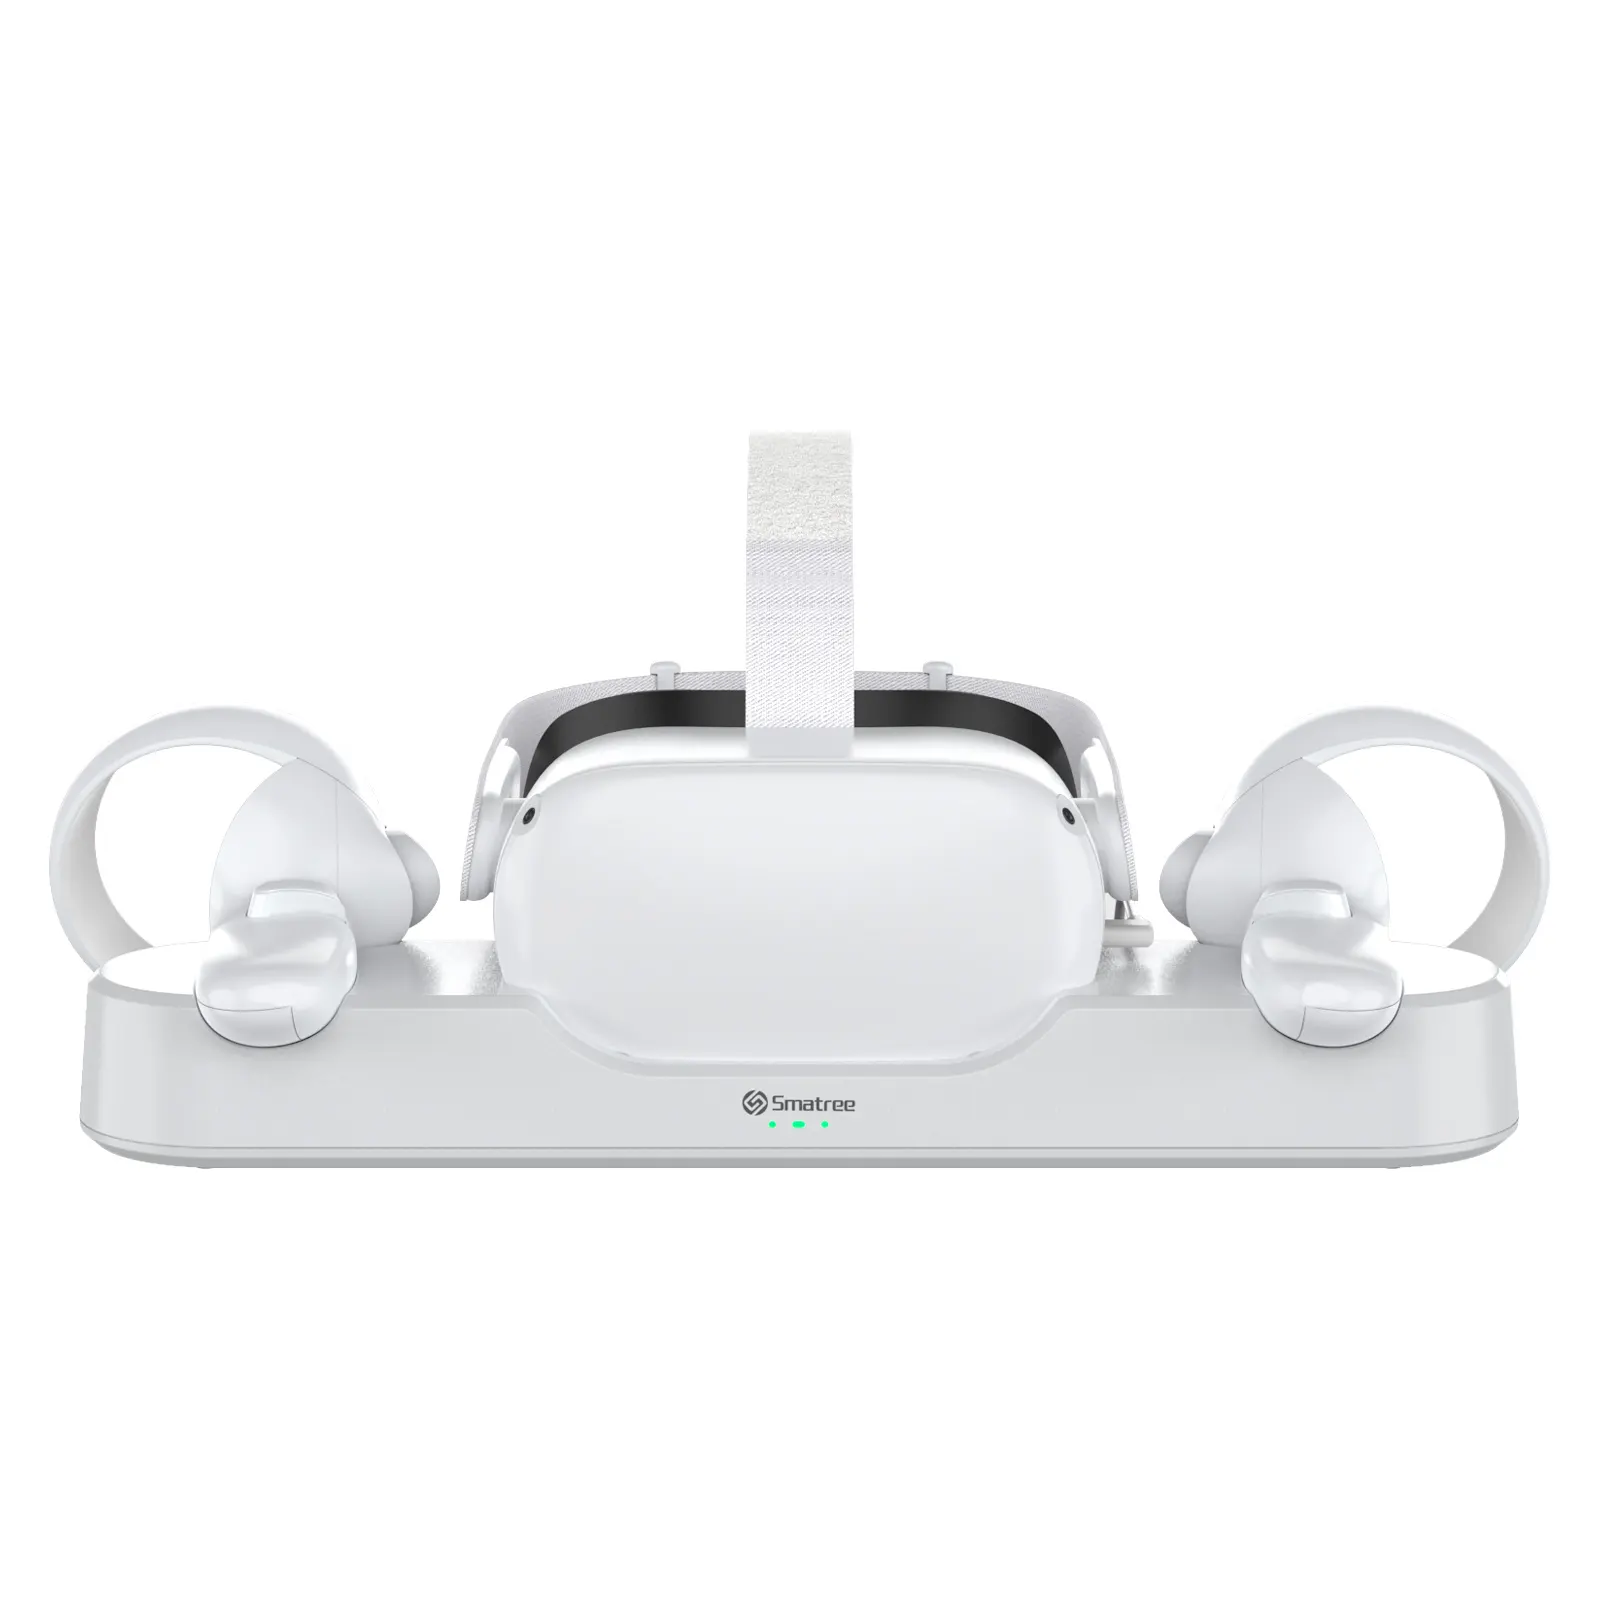 Sma tree-gafas inteligentes VR, estación de carga de 1800mAh, cargador de gafas VR